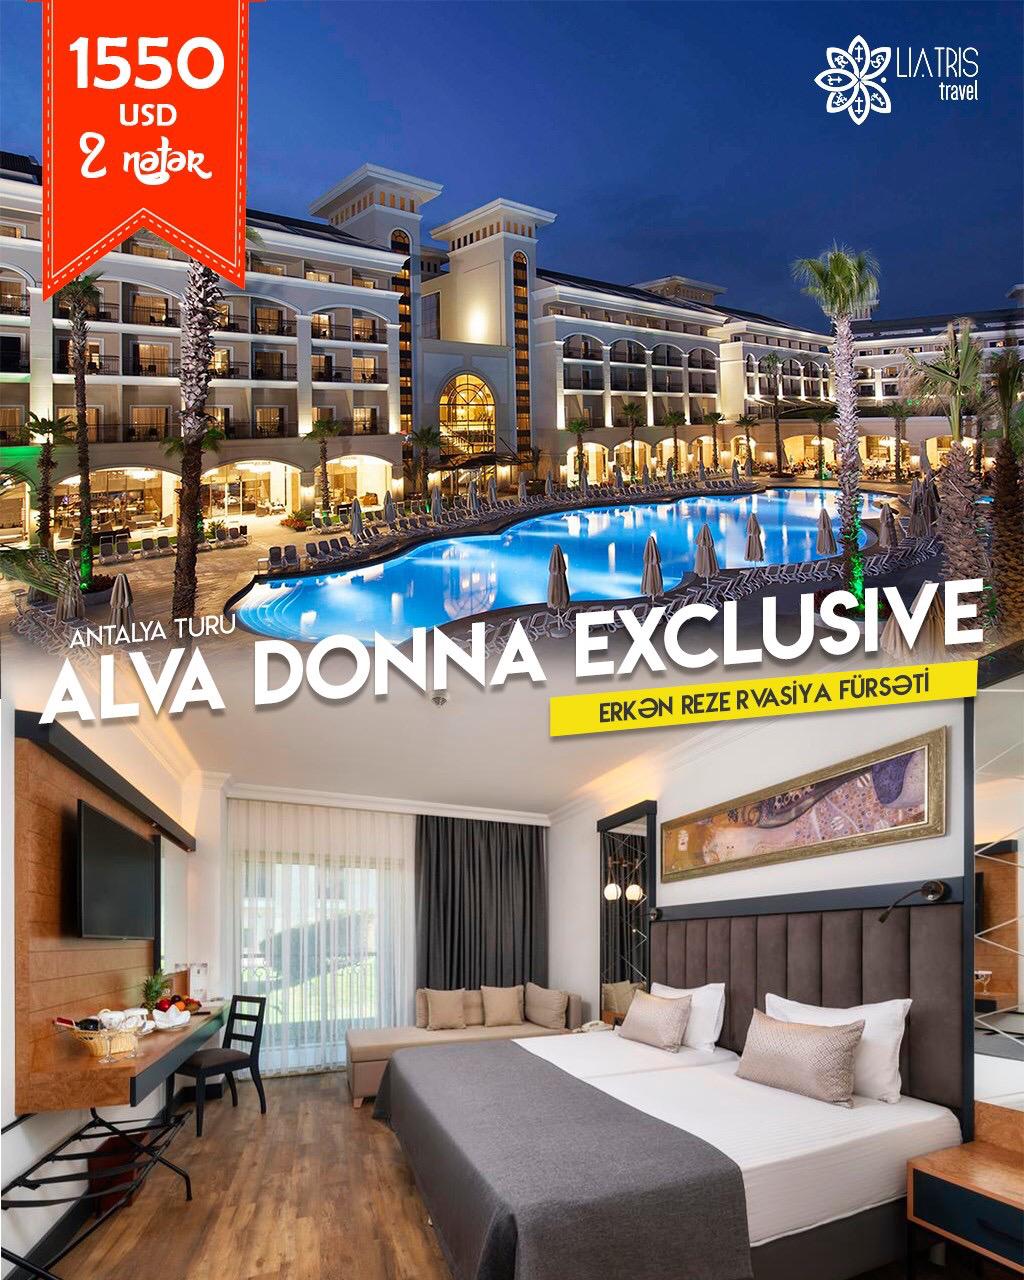 Alva Donna Exclusive Hotel 5* otelinə erkən rezervasiya fürsəti!